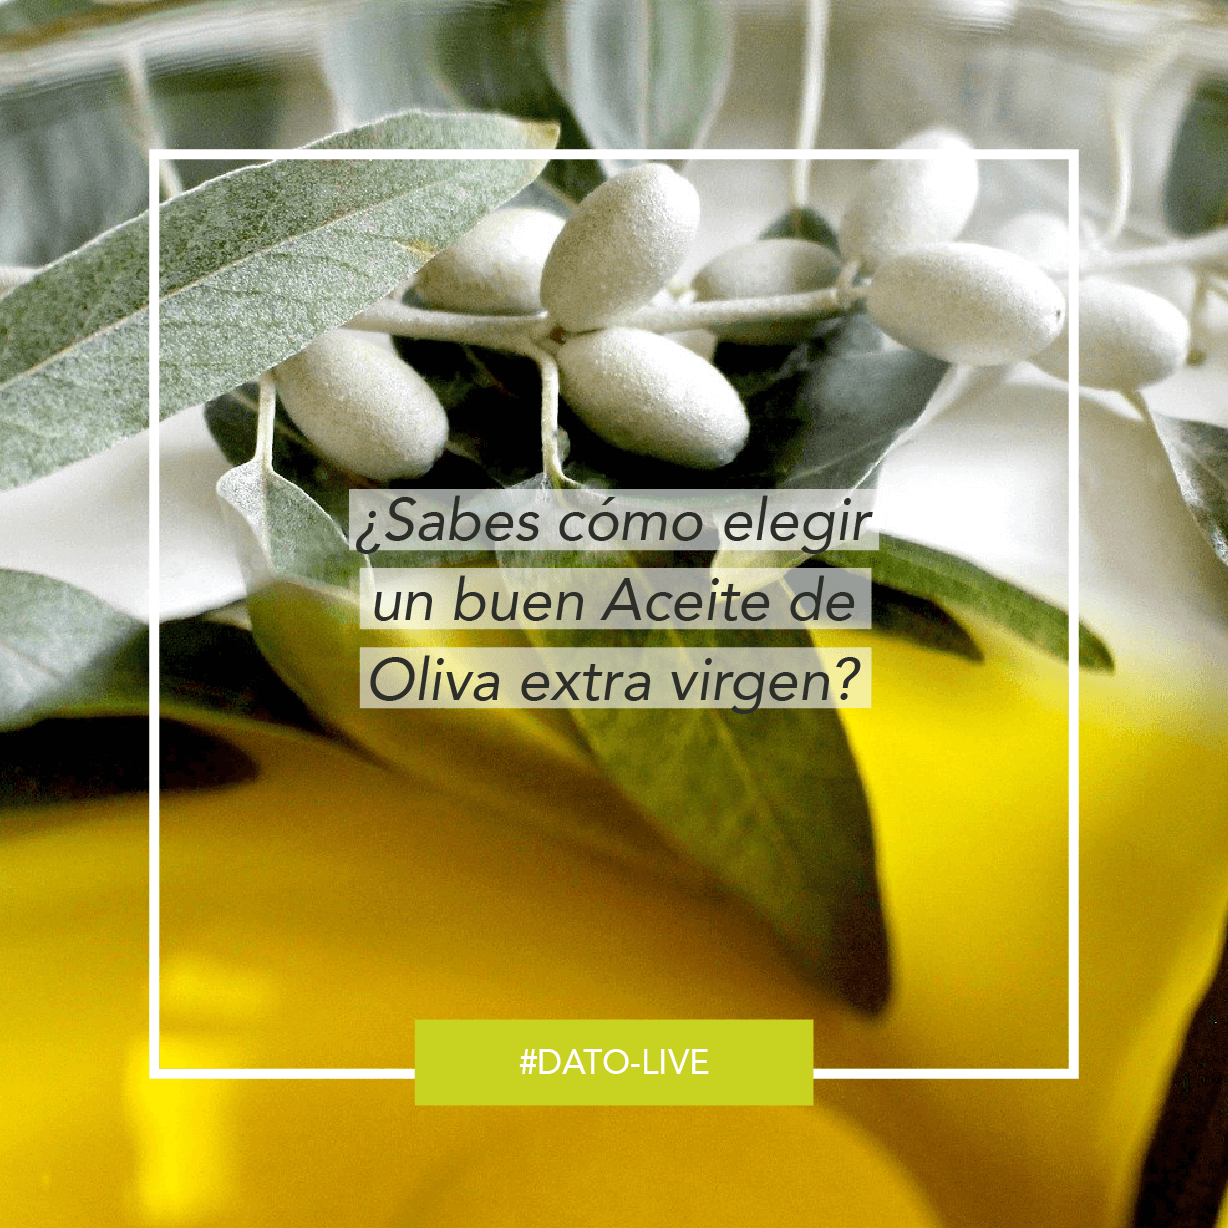 Portada de dato O-Live que muestra el texto: "Como reconocer un buen aceite de oliva"